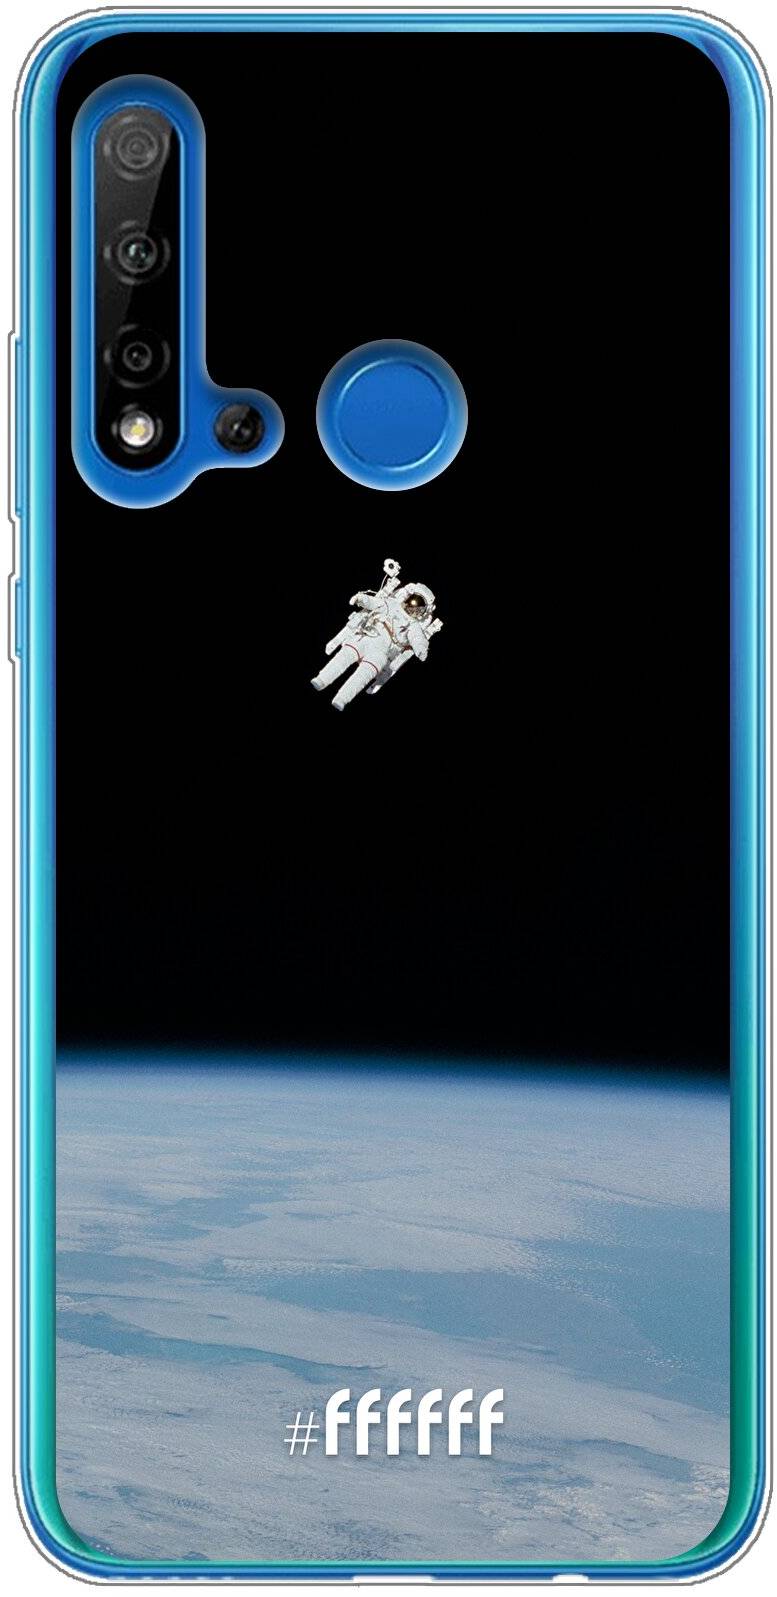 Spacewalk P20 Lite (2019)